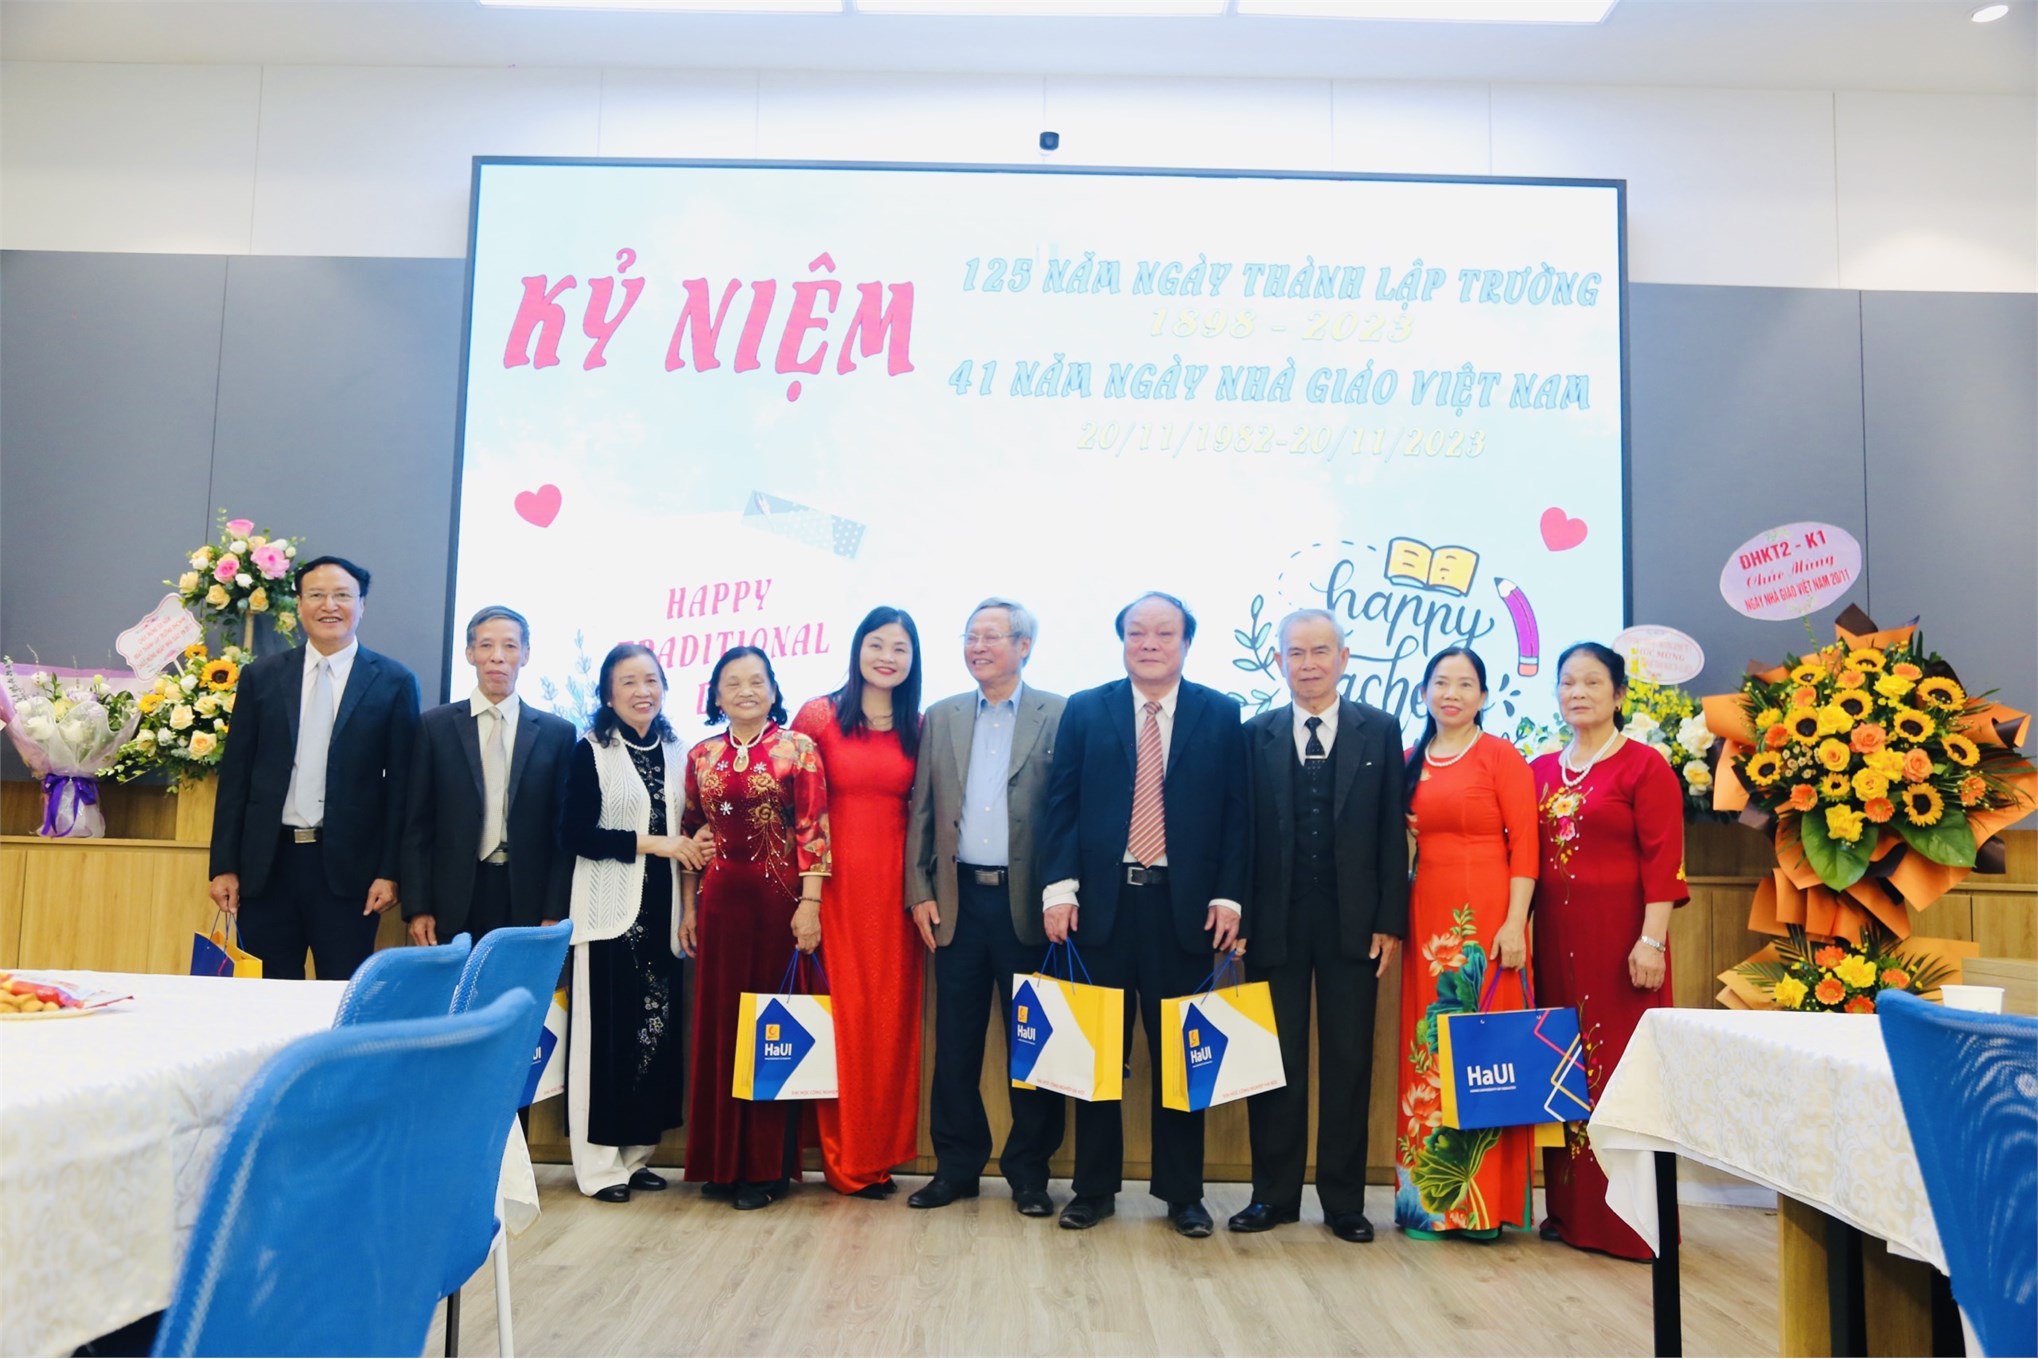 Buổi lễ kỷ niệm 125 năm thành lập trường Đại học Công Nghiệp Hà Nội và chào mừng nhà Nhà giáo Việt Nam với cầu truyền hình trực tiếp từ hội trường Nhà A11 tại đơn vị Khoa Kế toán Kiểm toán ngày 18/11/2023